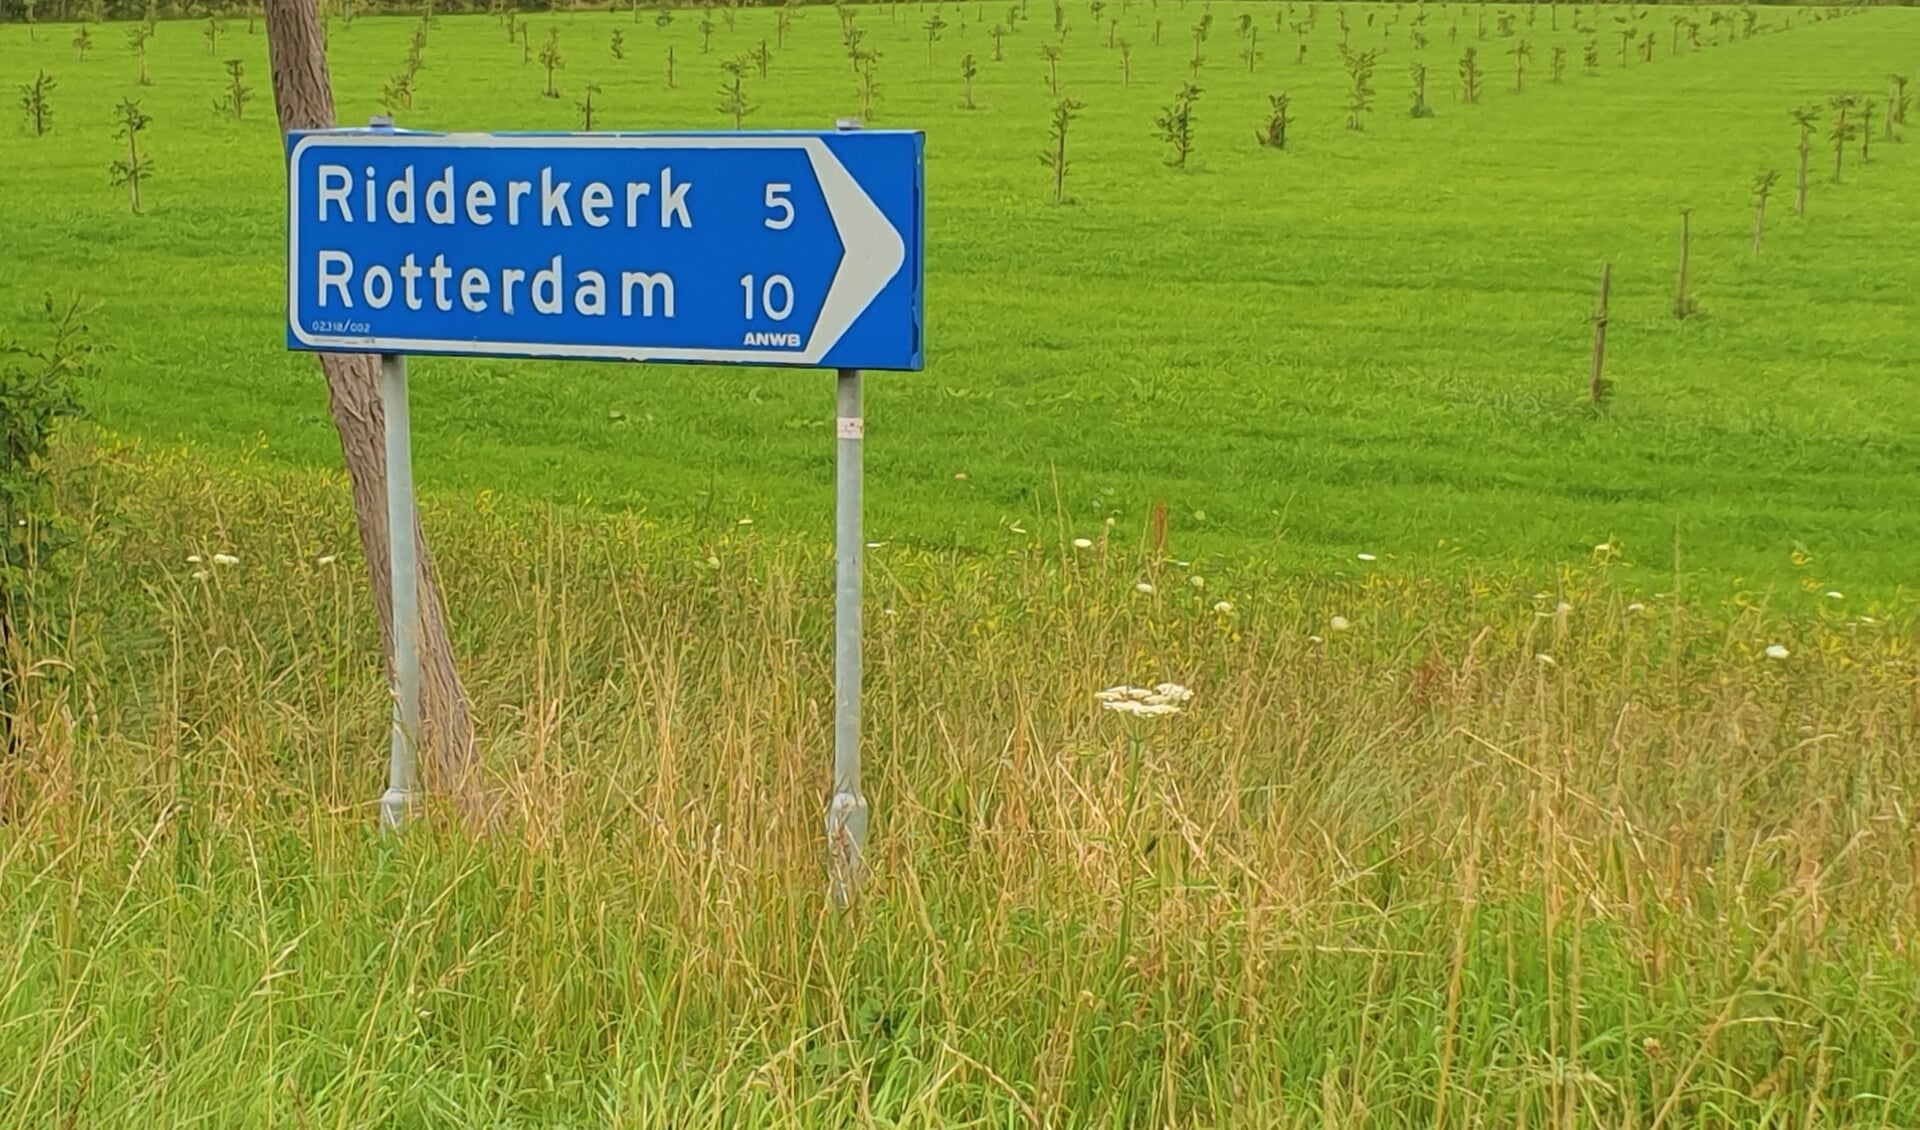 De PvdA wil een boomgaard zien en geen nieuwe weg